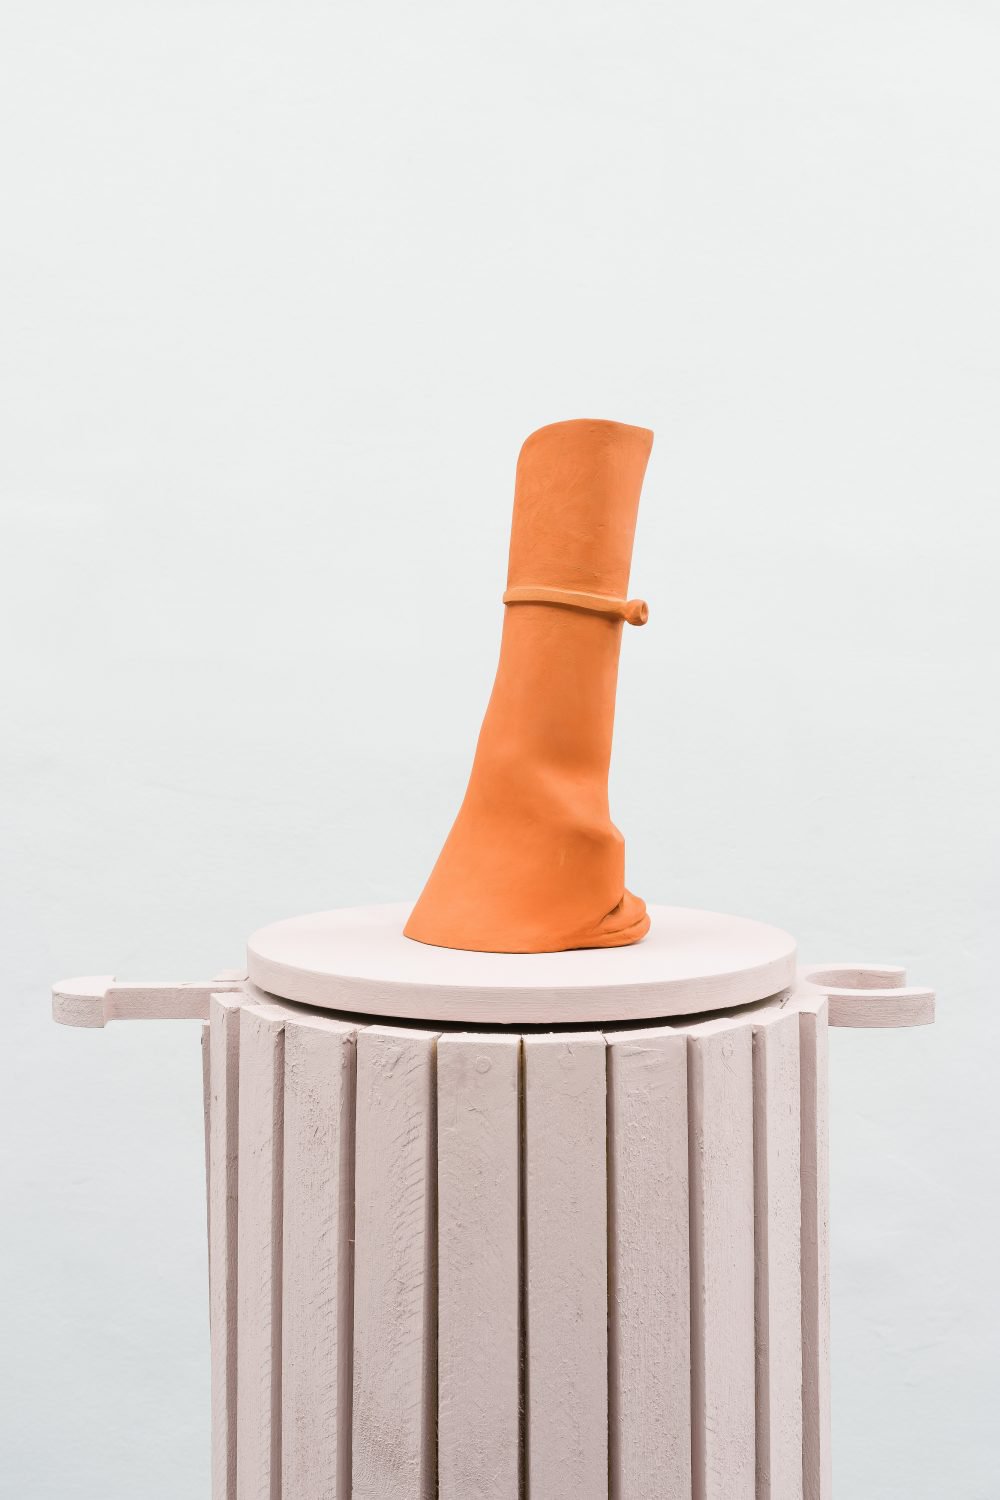 Lena HenkeGolden Ages, 2017Glazed ceramic on wooden pedestal18 x 15 x 36 cm